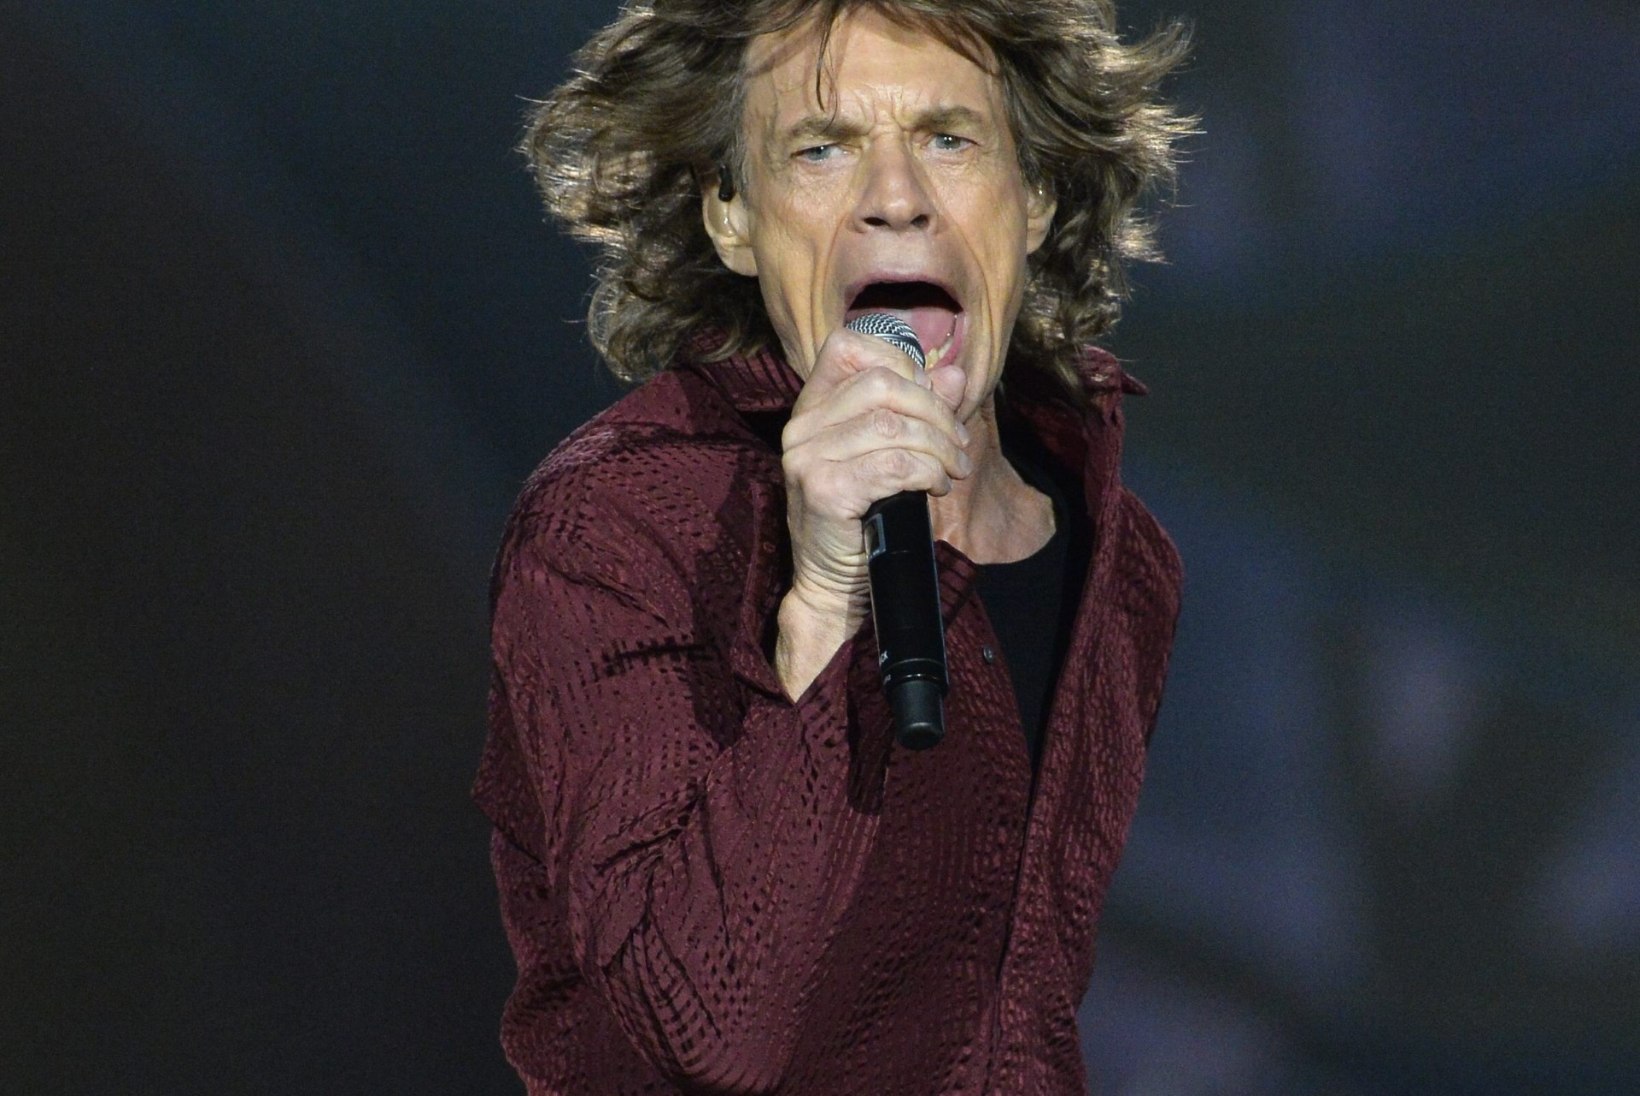 Brasiillased leidsid patuoina – 1:7 kaotuses on süüdi Mick Jagger!